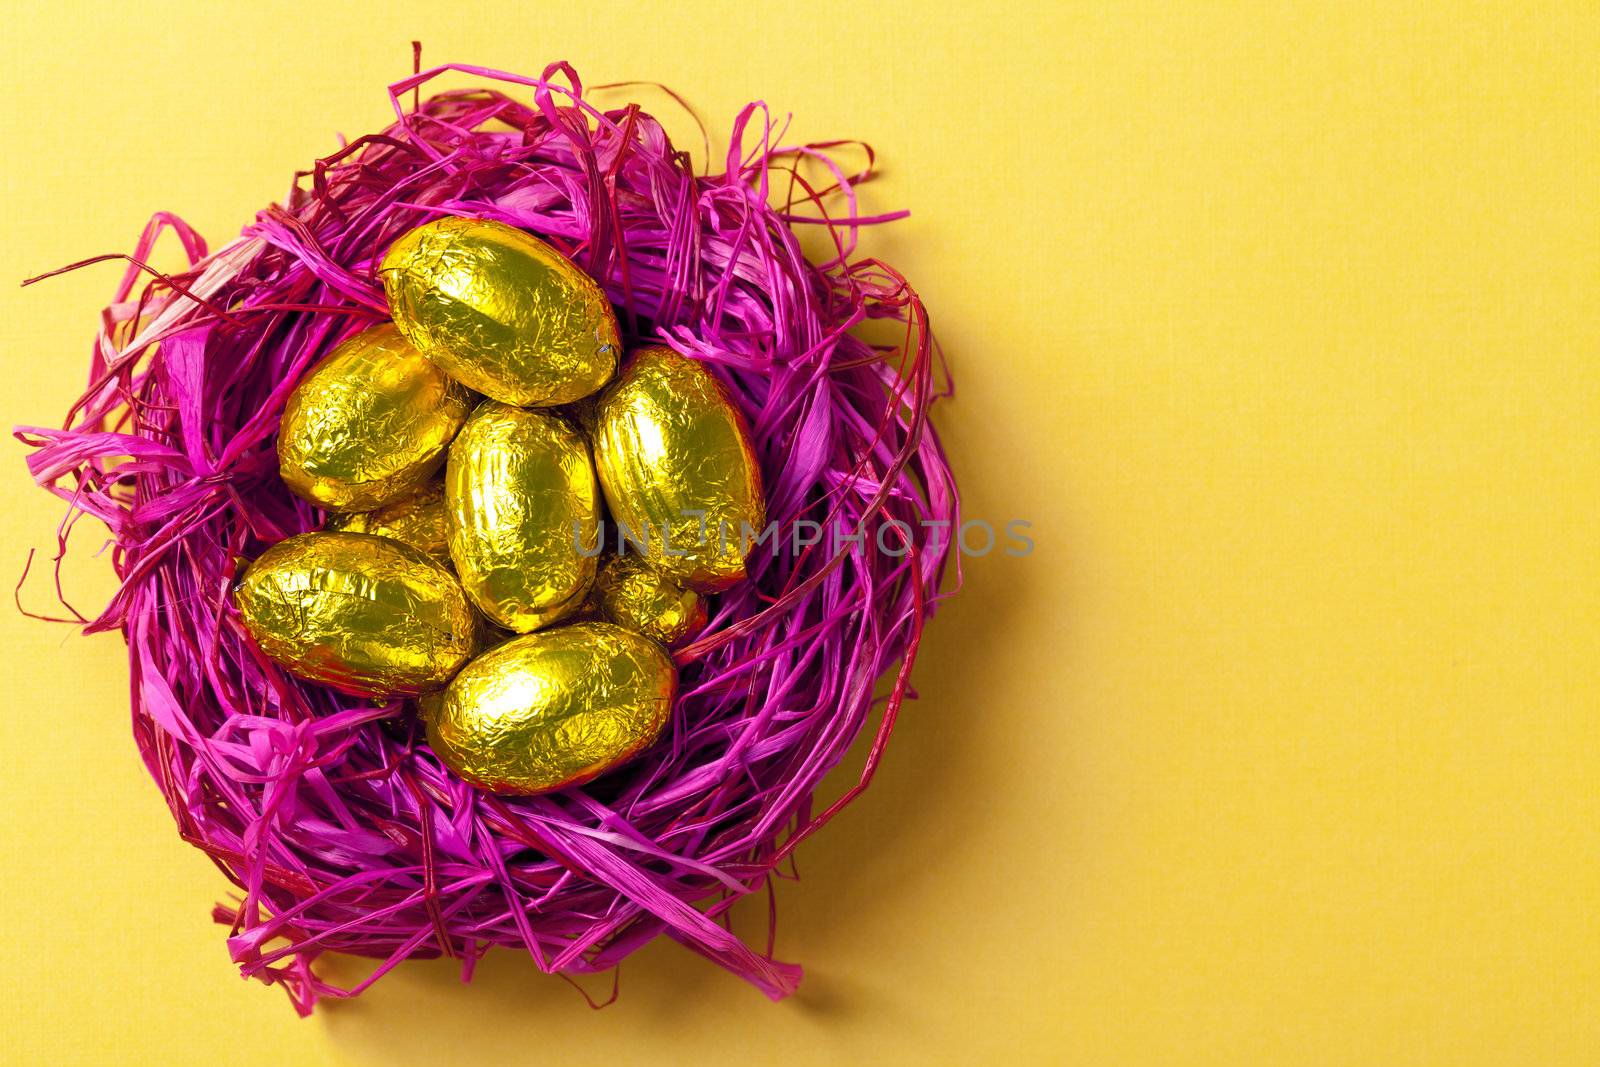 Easter eggs by bozena_fulawka